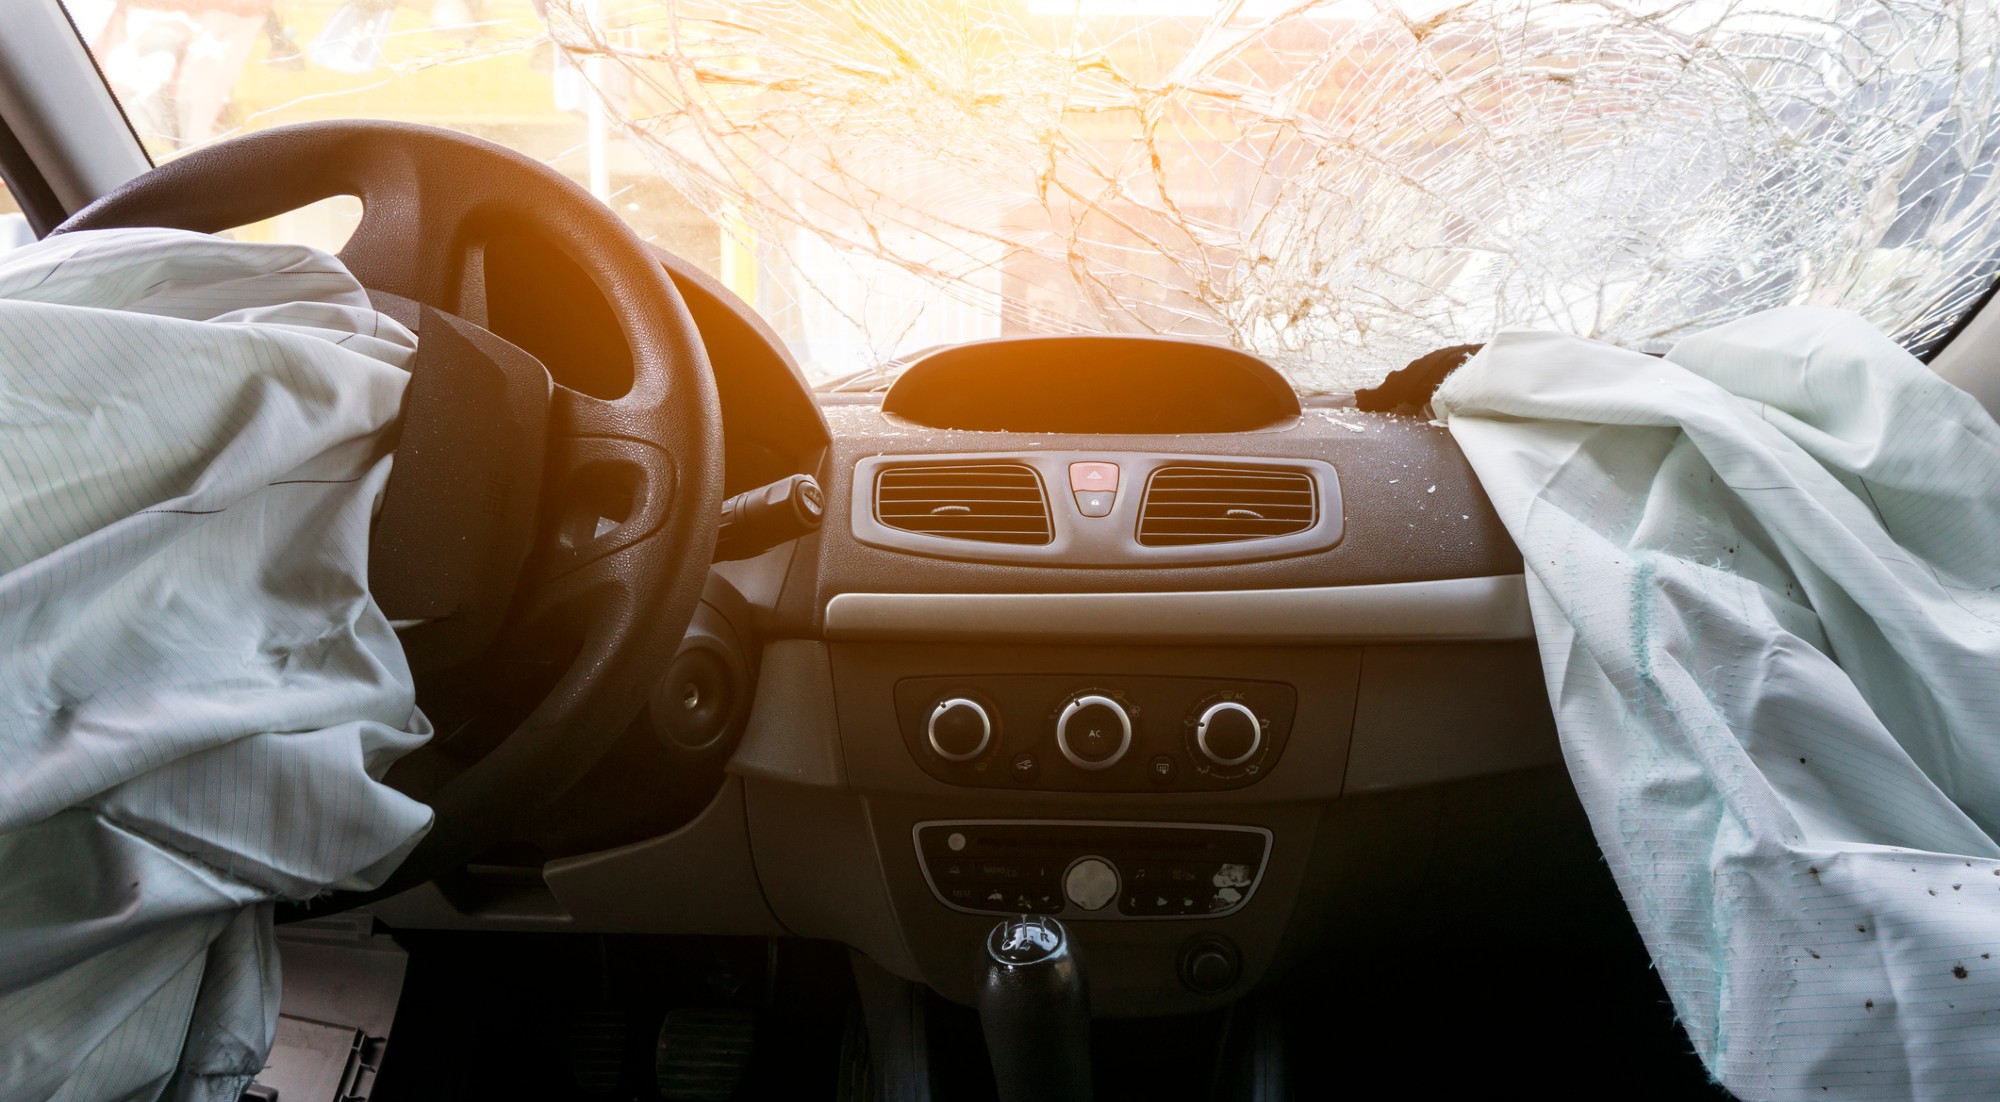 La historia del airbag: pasado, presente y mucho futuro